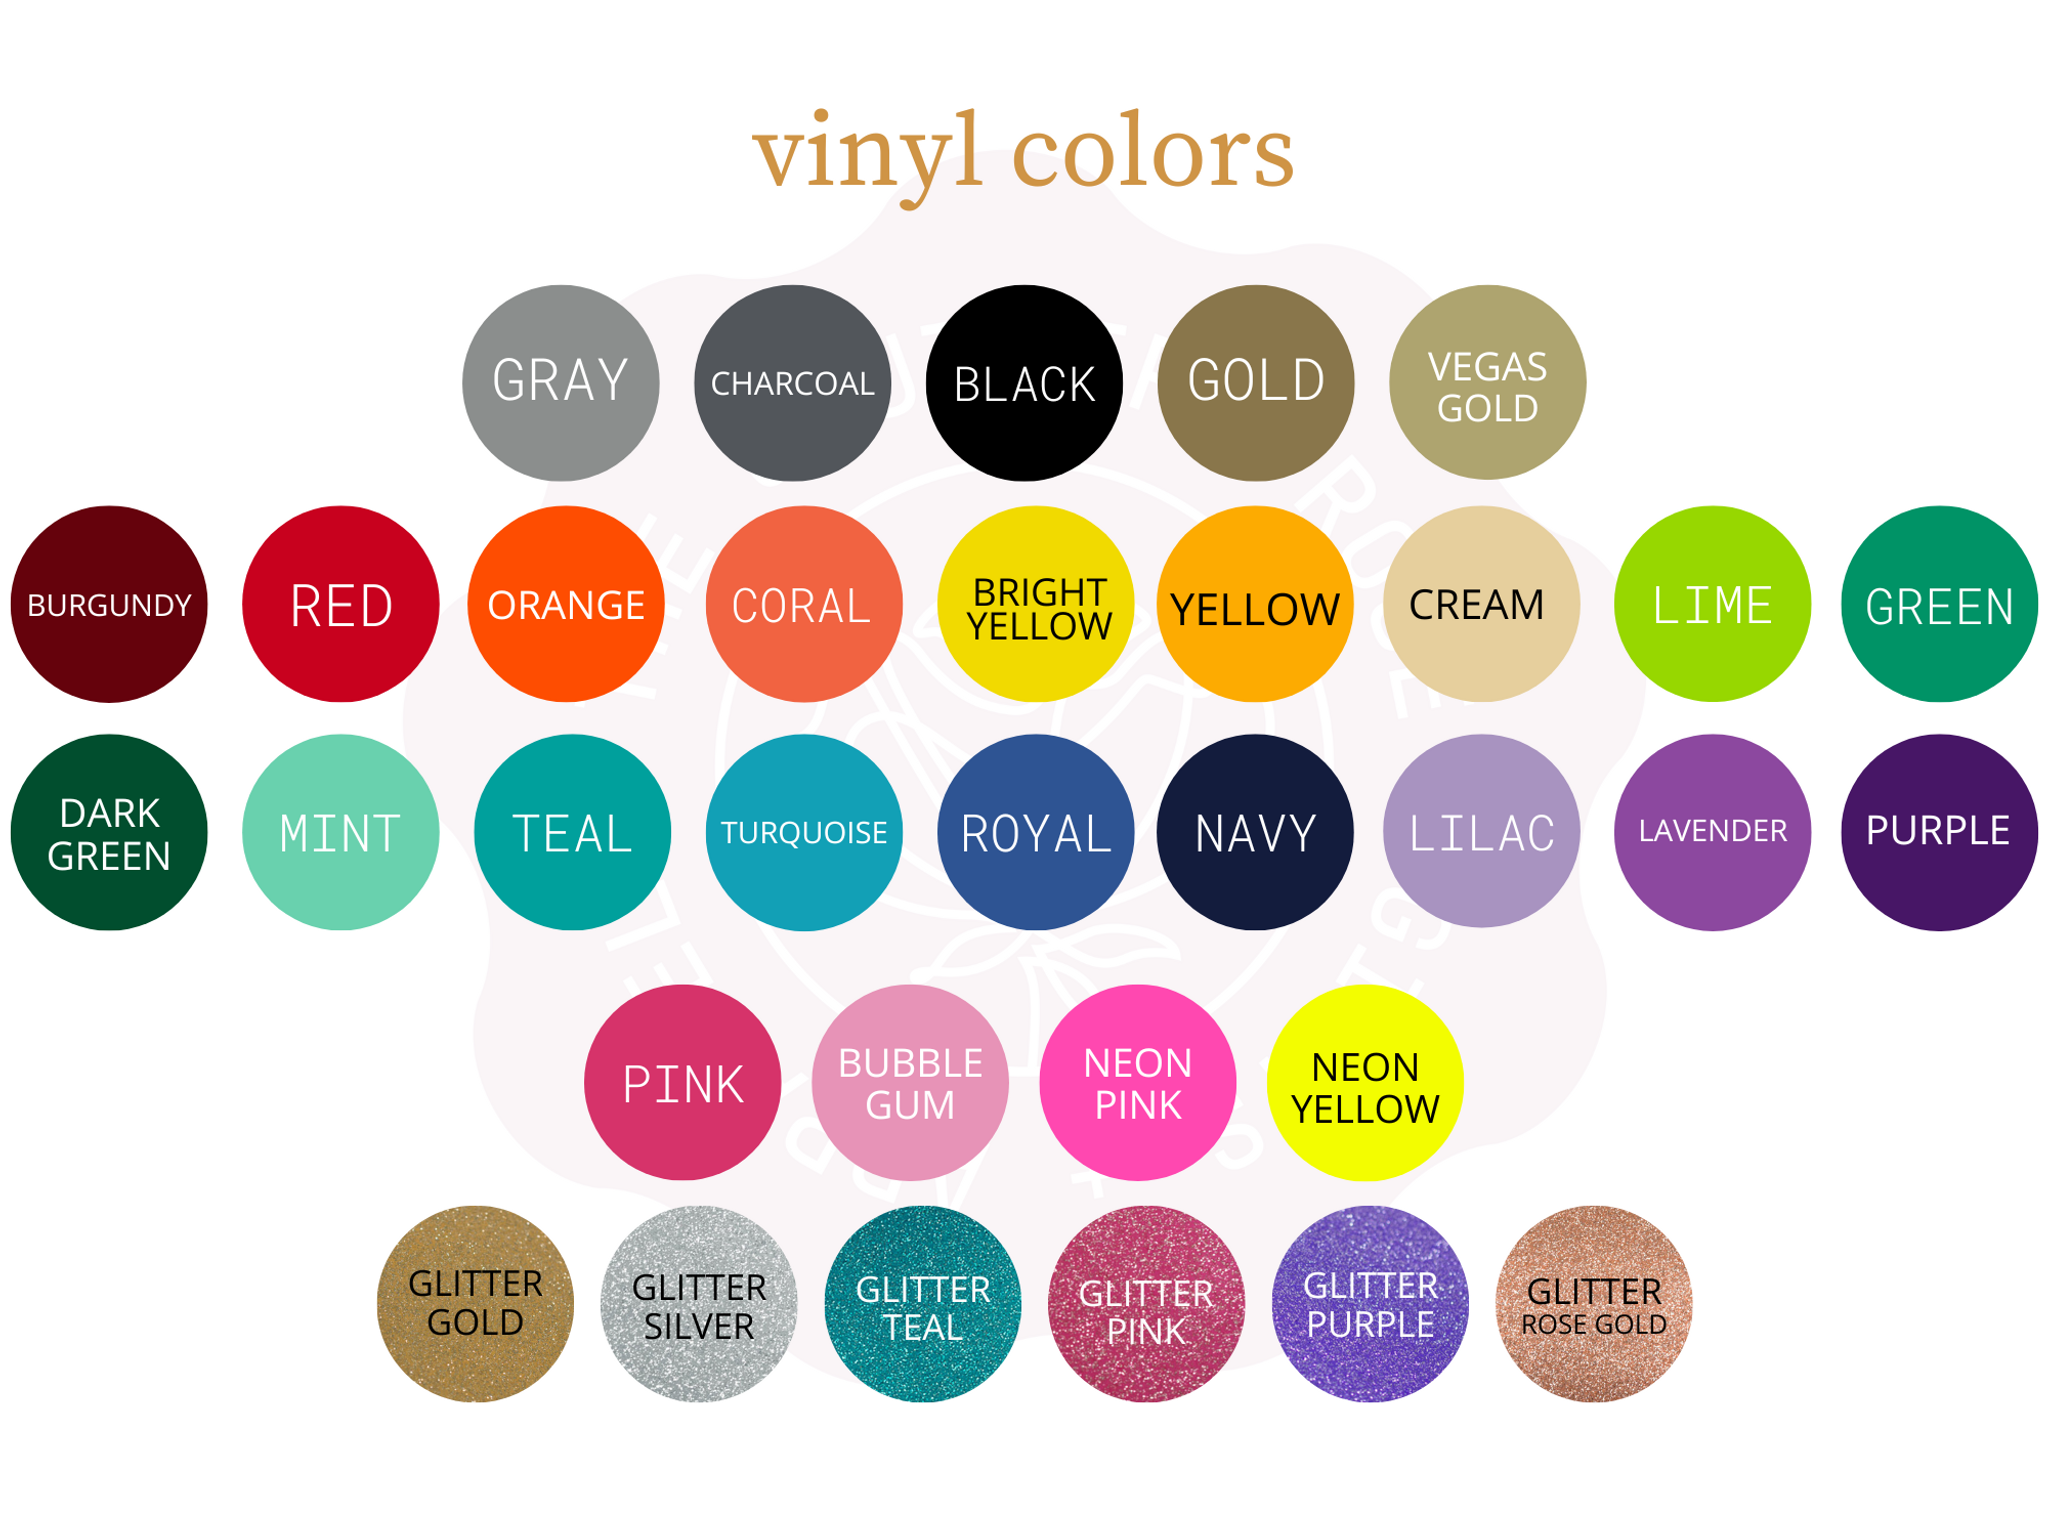 https://cdn11.bigcommerce.com/s-qiszfjgfwj/images/stencil/original/products/3173/14942/tsr2-vinyl-colors__21651__76305.1673381968.png?c=2